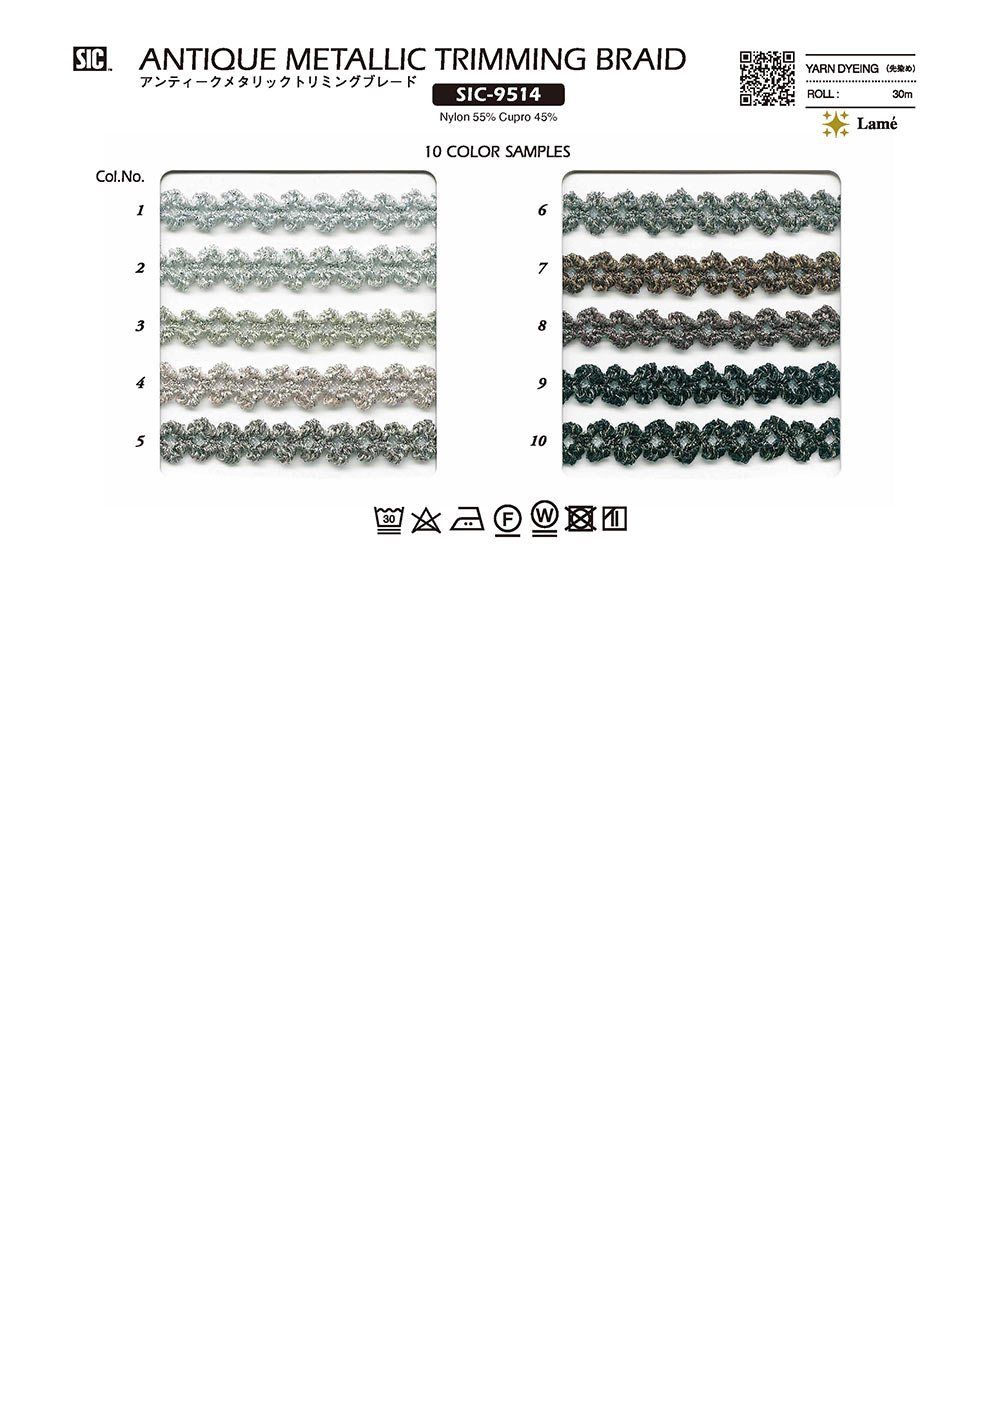 SIC-9514 골동품 메탈릭 트림 블레이드[리본 테이프 코드] SHINDO(SIC)